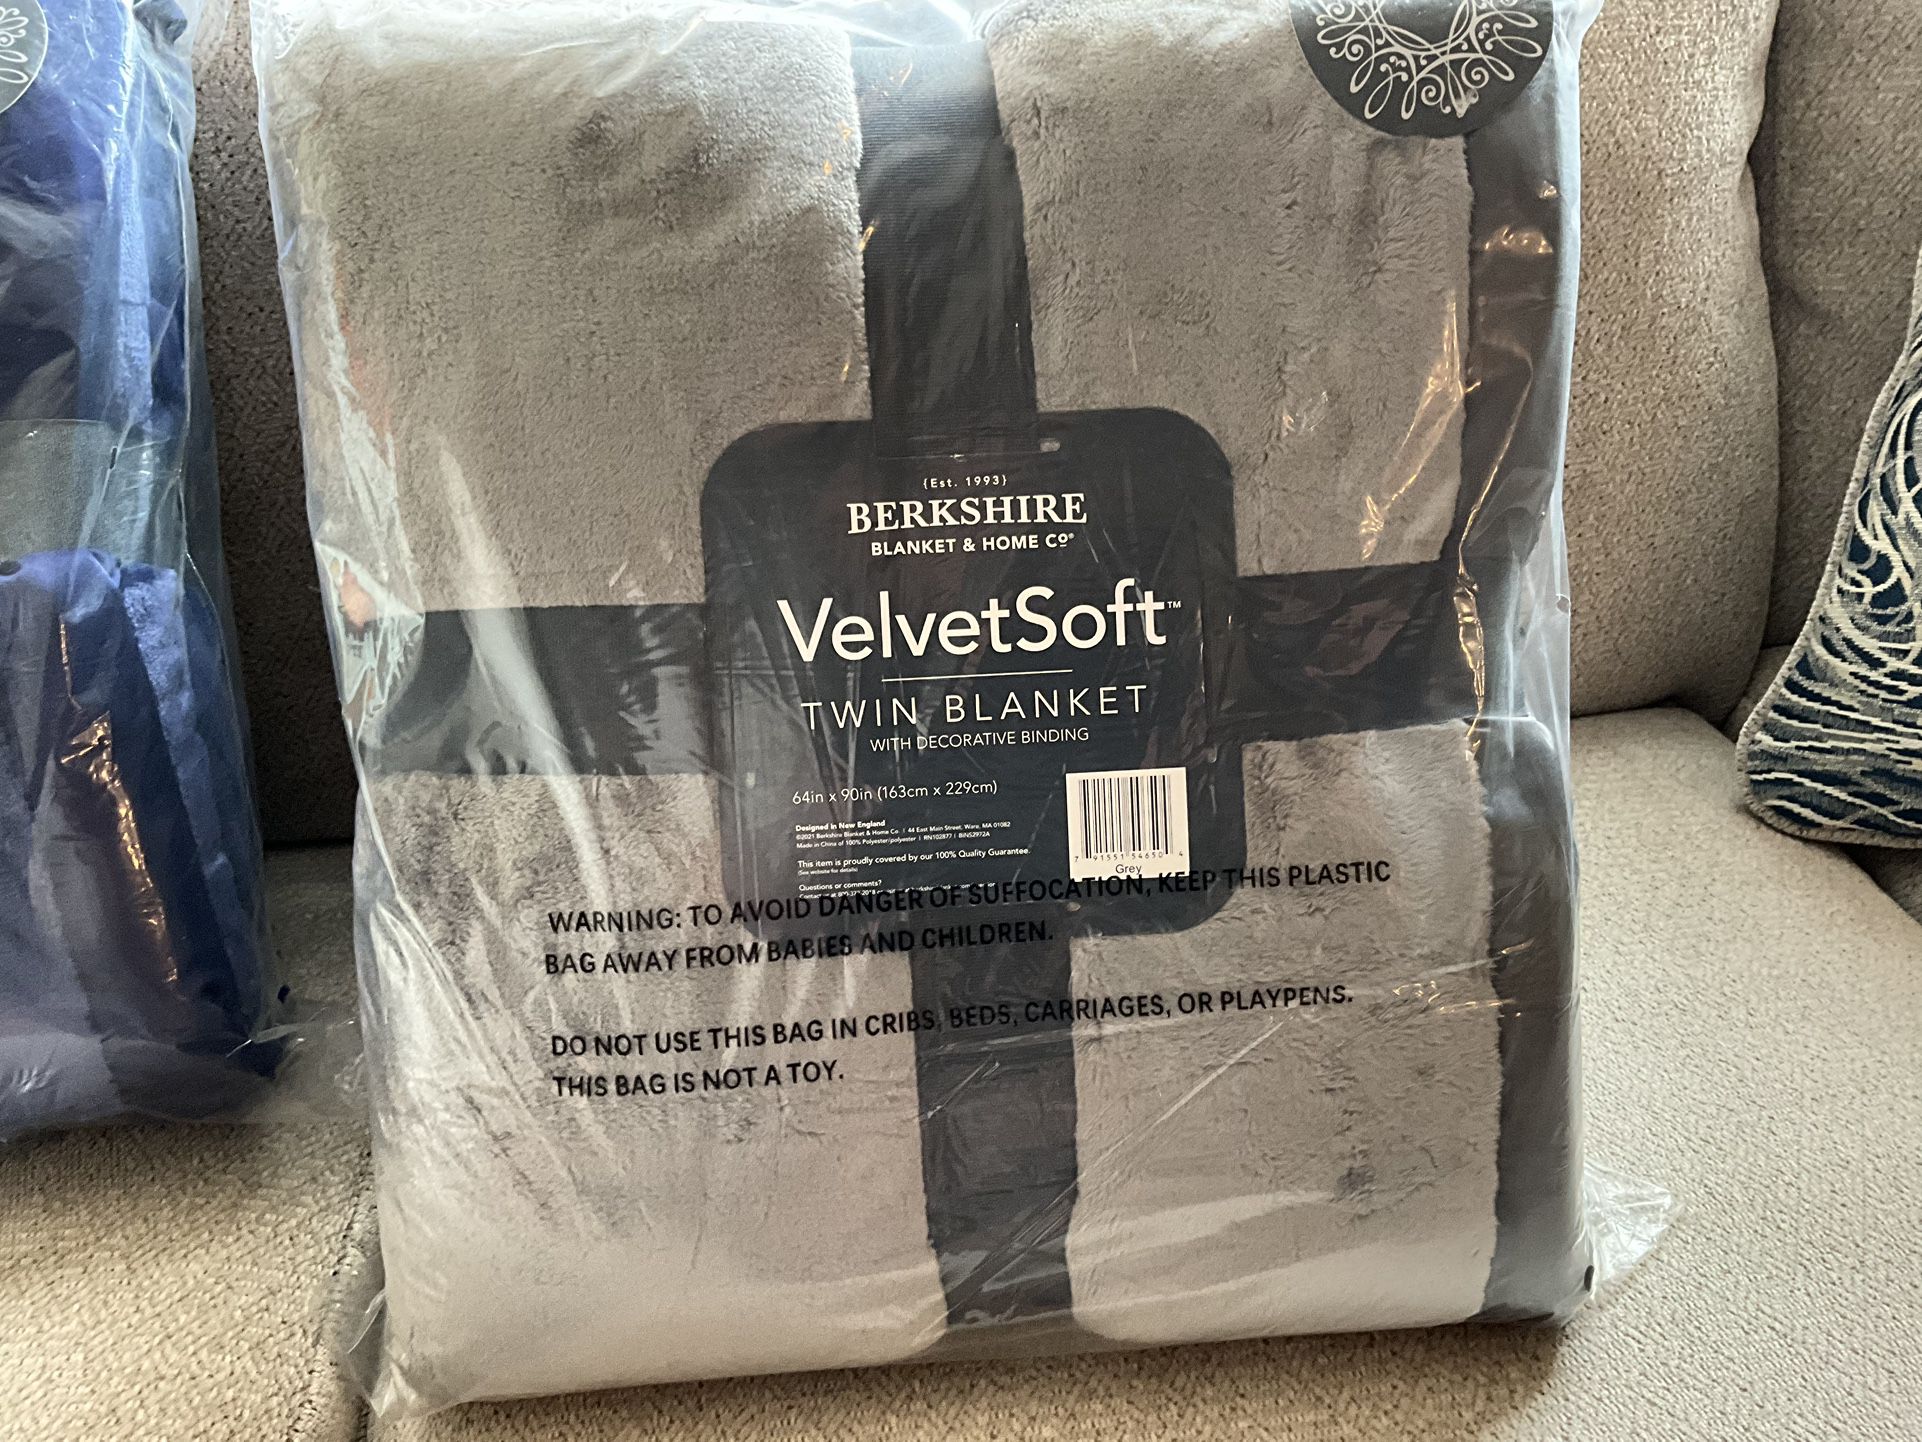 Berkshire VelvetSoft Velvet Soft Blanket W/Edging TW Sz 64” X 90” New Grey Plush